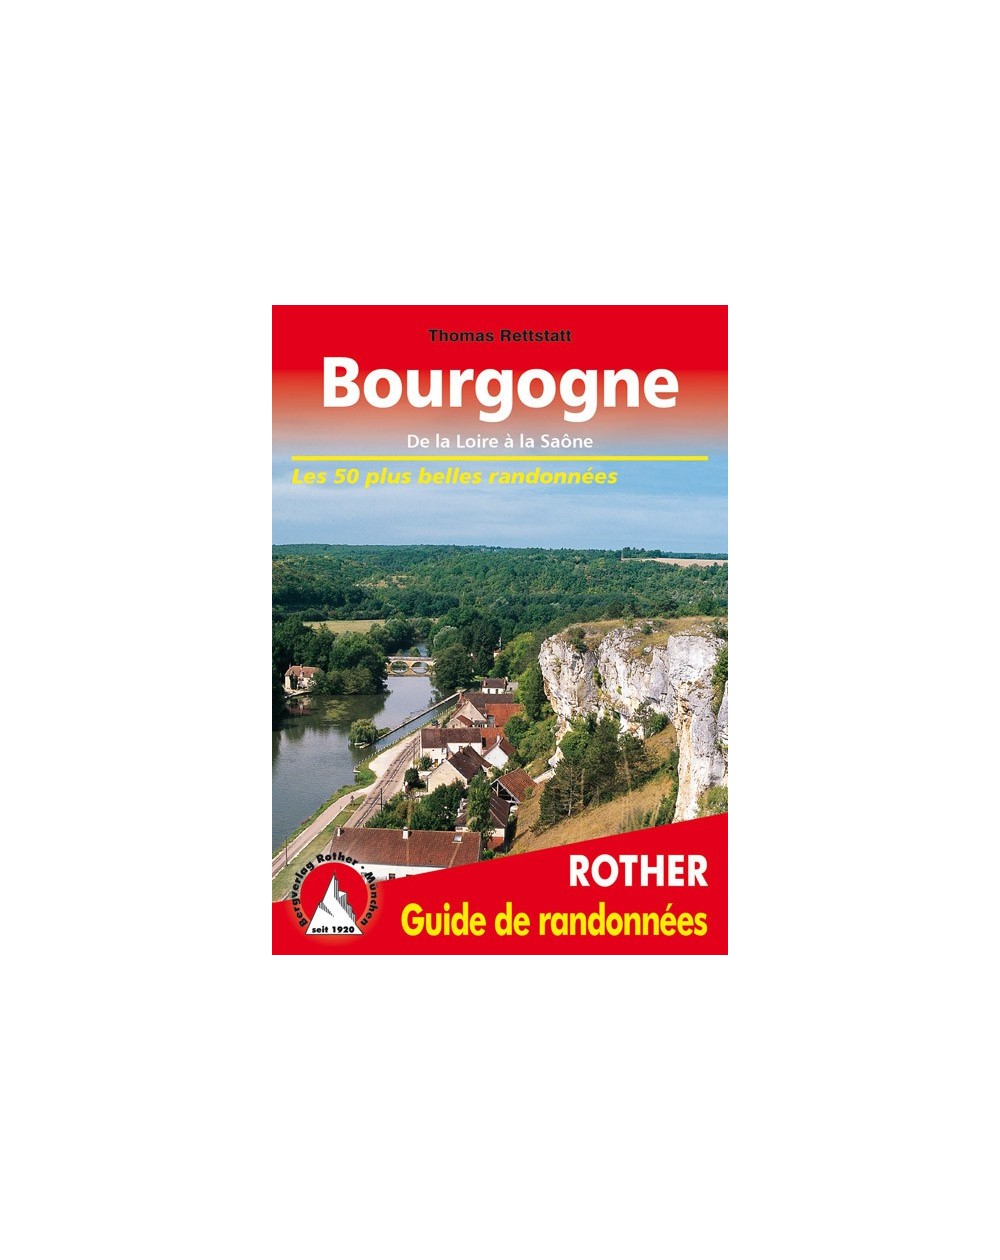 Guide Rother de randonnée Bourgogne de la Loire à la Saône